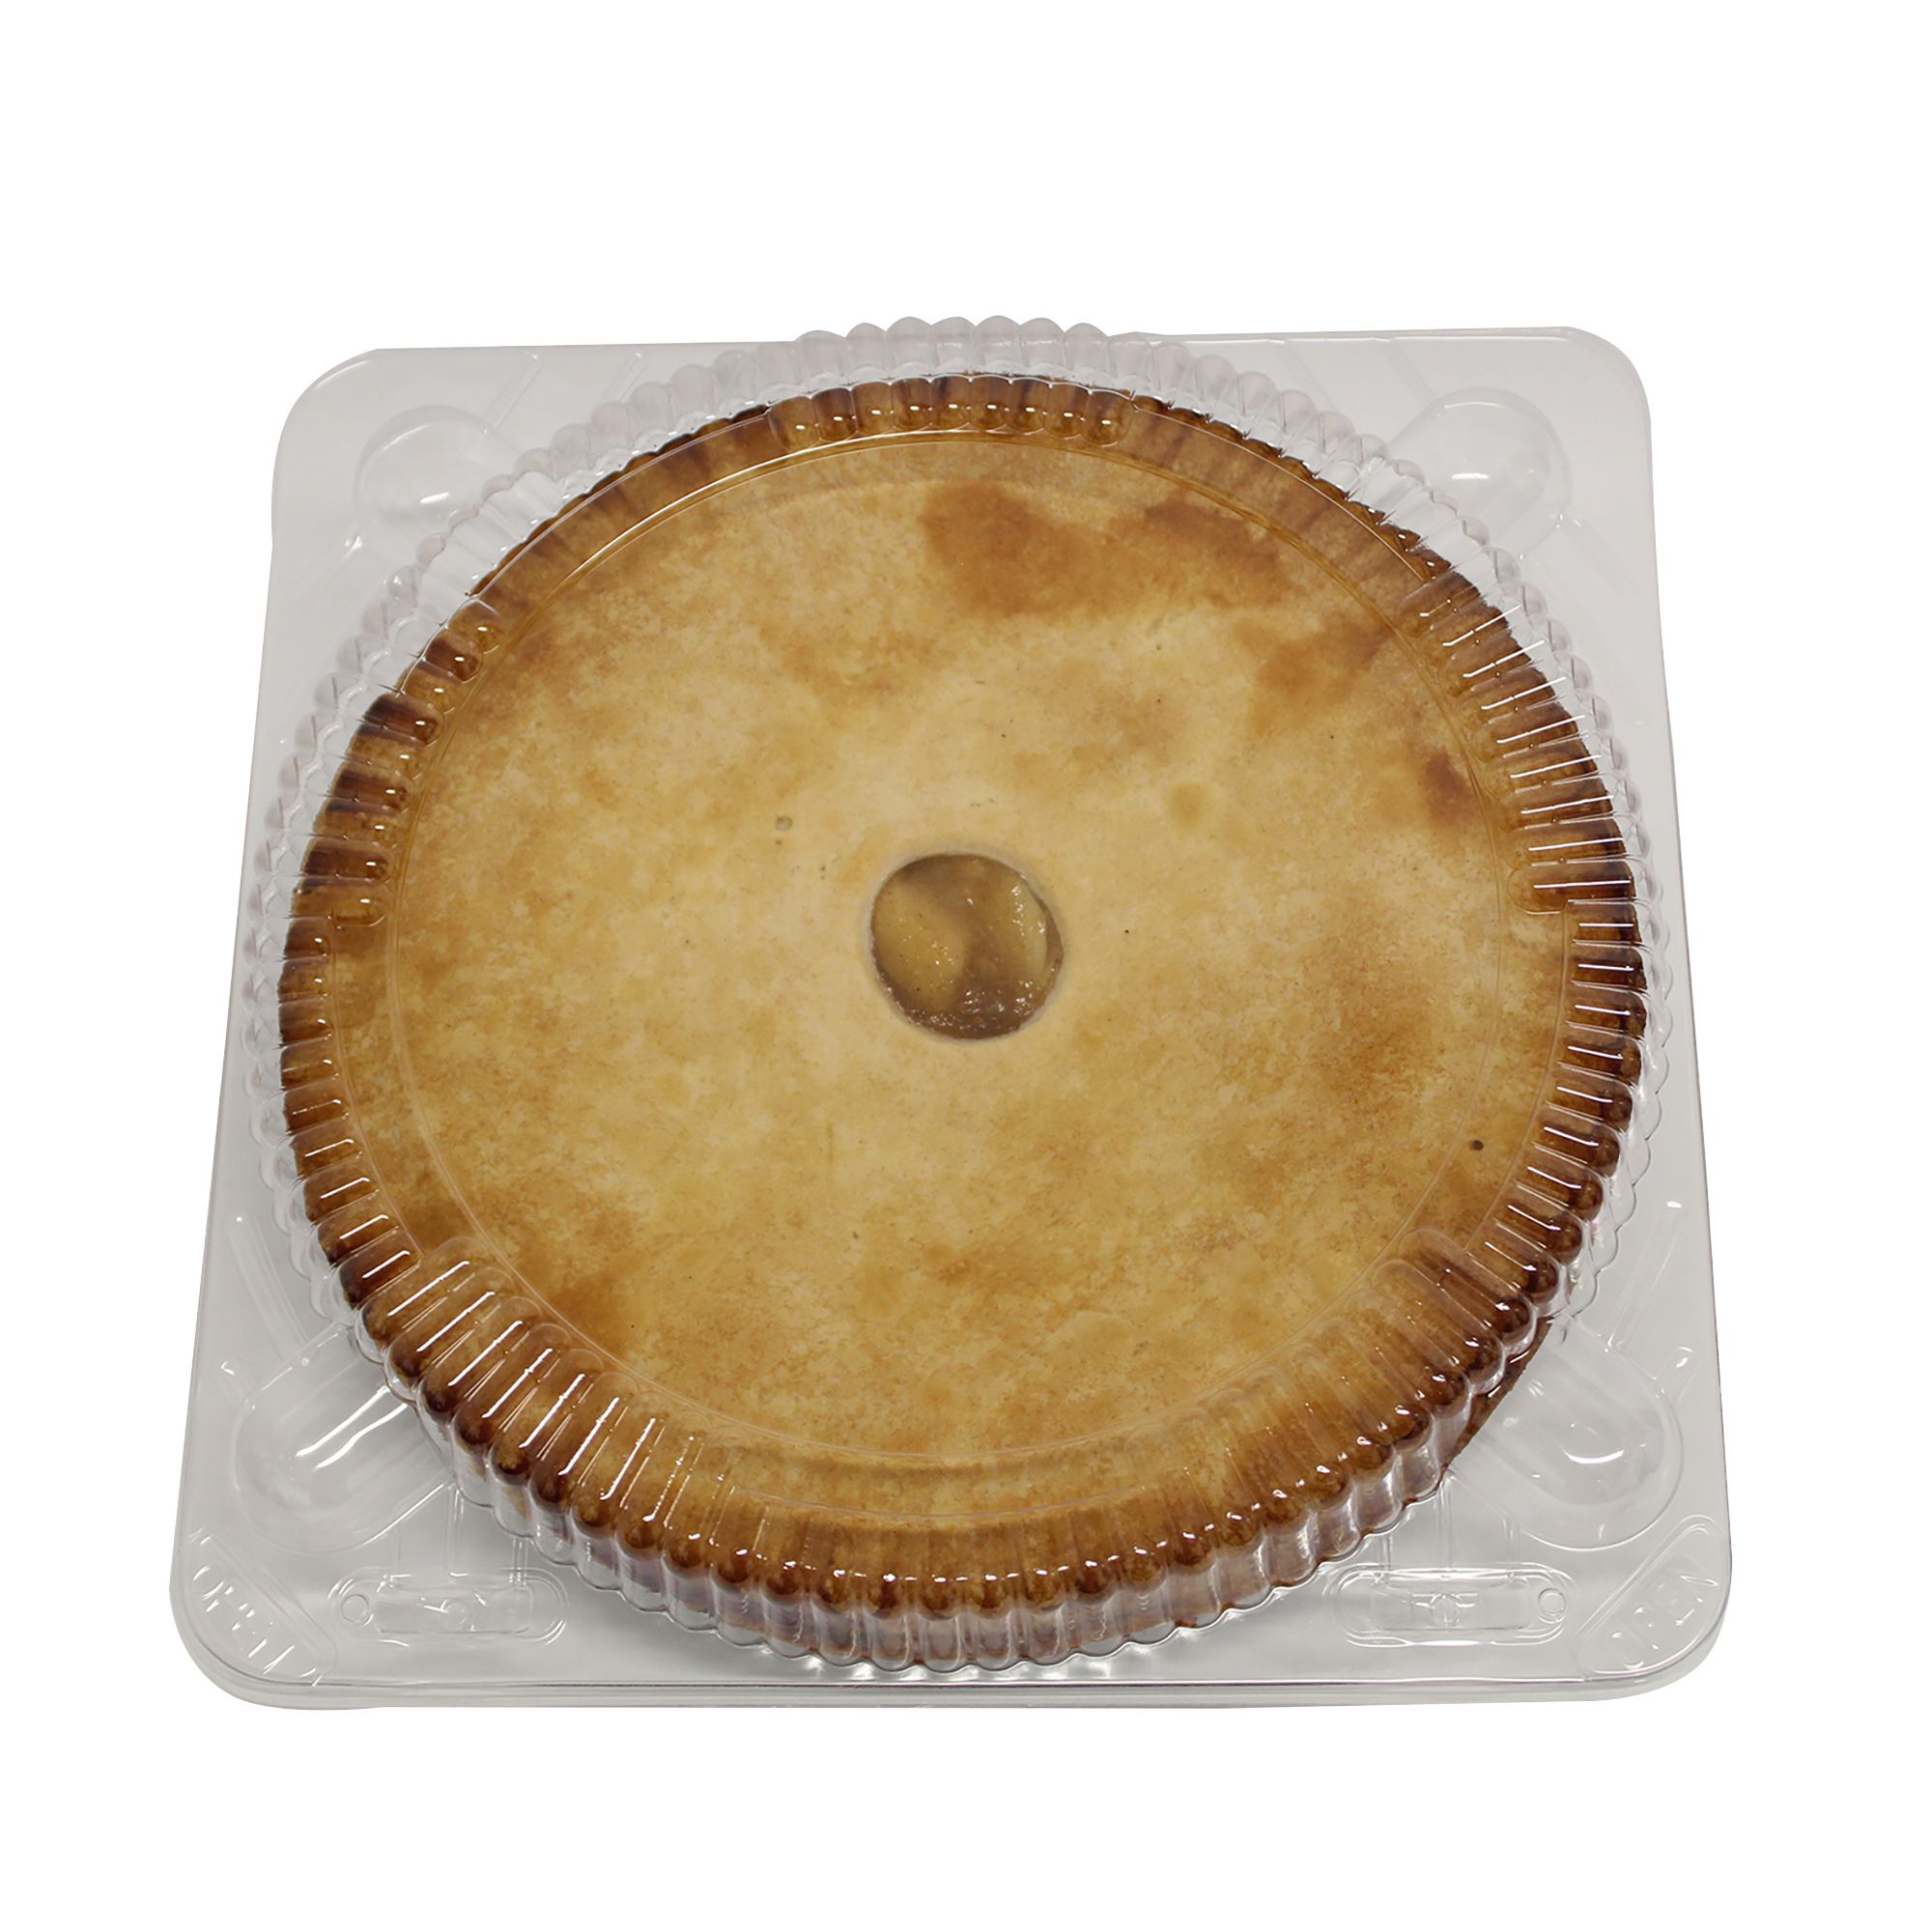 Wellsley Farms 9&quot; No Sugar Added Apple Pie